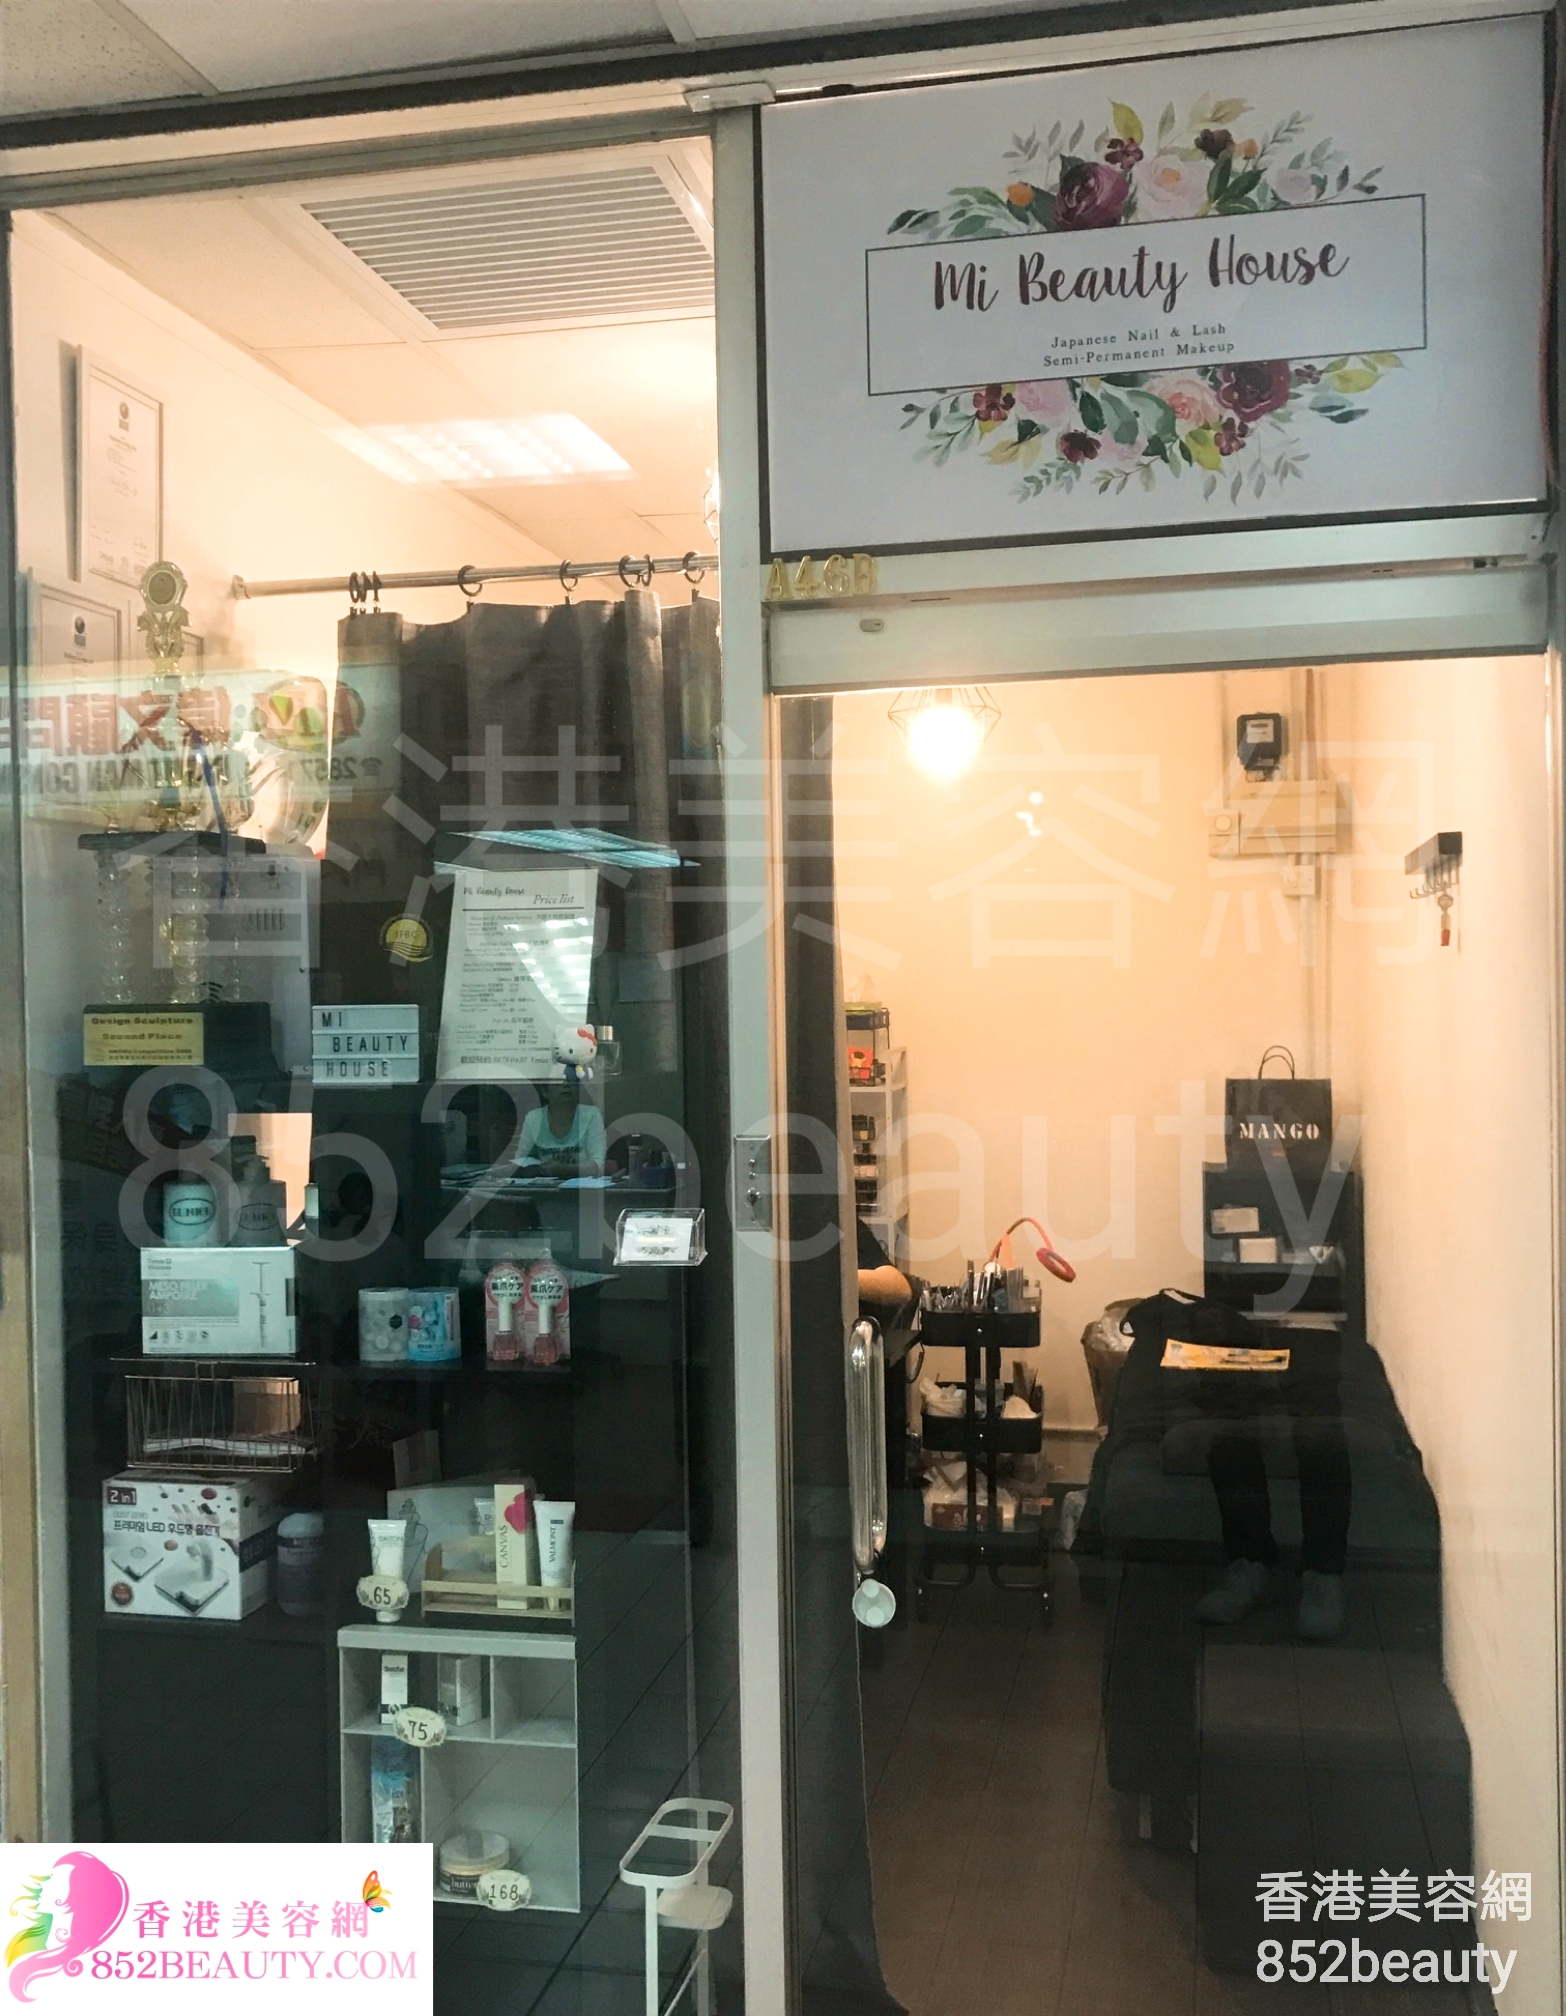 香港美容網 Hong Kong Beauty Salon 美容院 / 美容師: Mi Beauty House